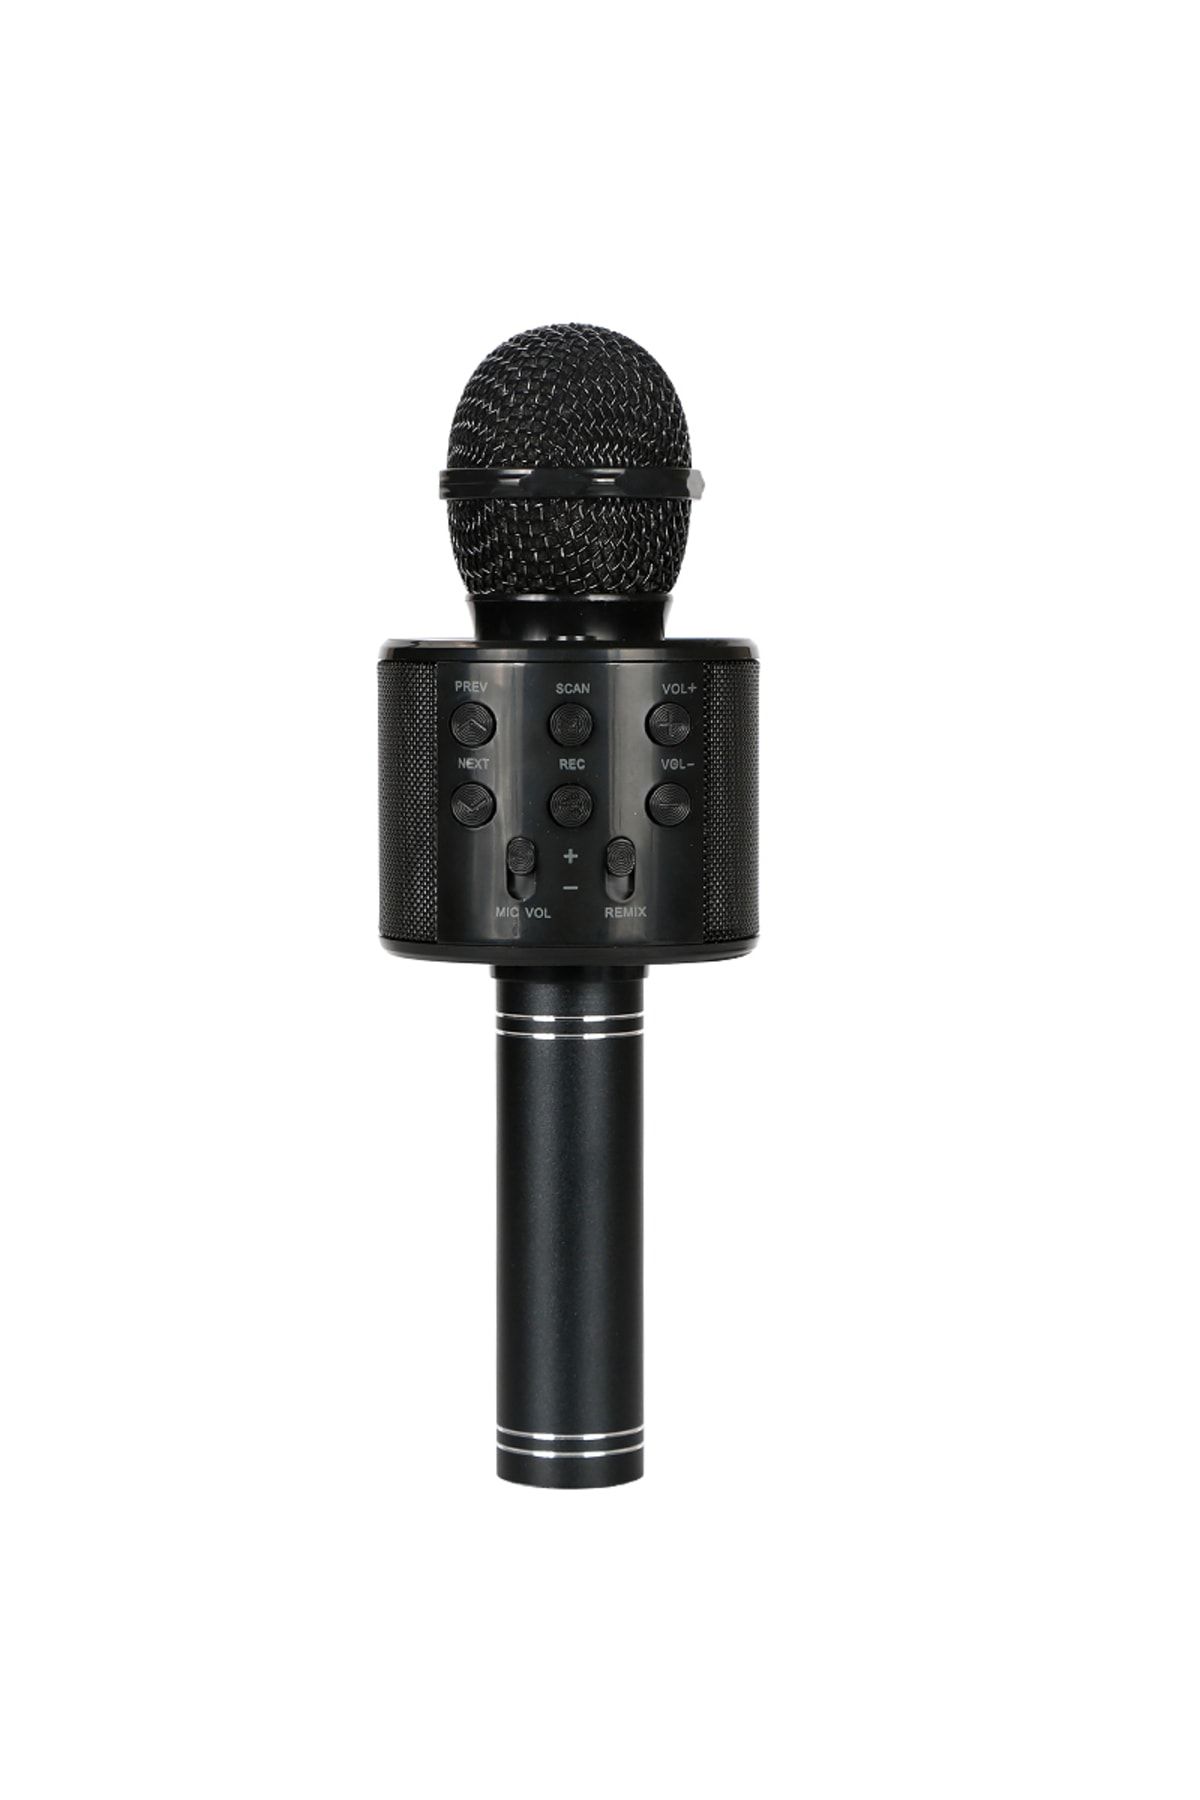 Bayer Karaoke Mikrofon Dahili Hoparlörlü Tüm Markalar Ile Uyumlu Usb-aux-sd Kart Girişli Flash Destekli